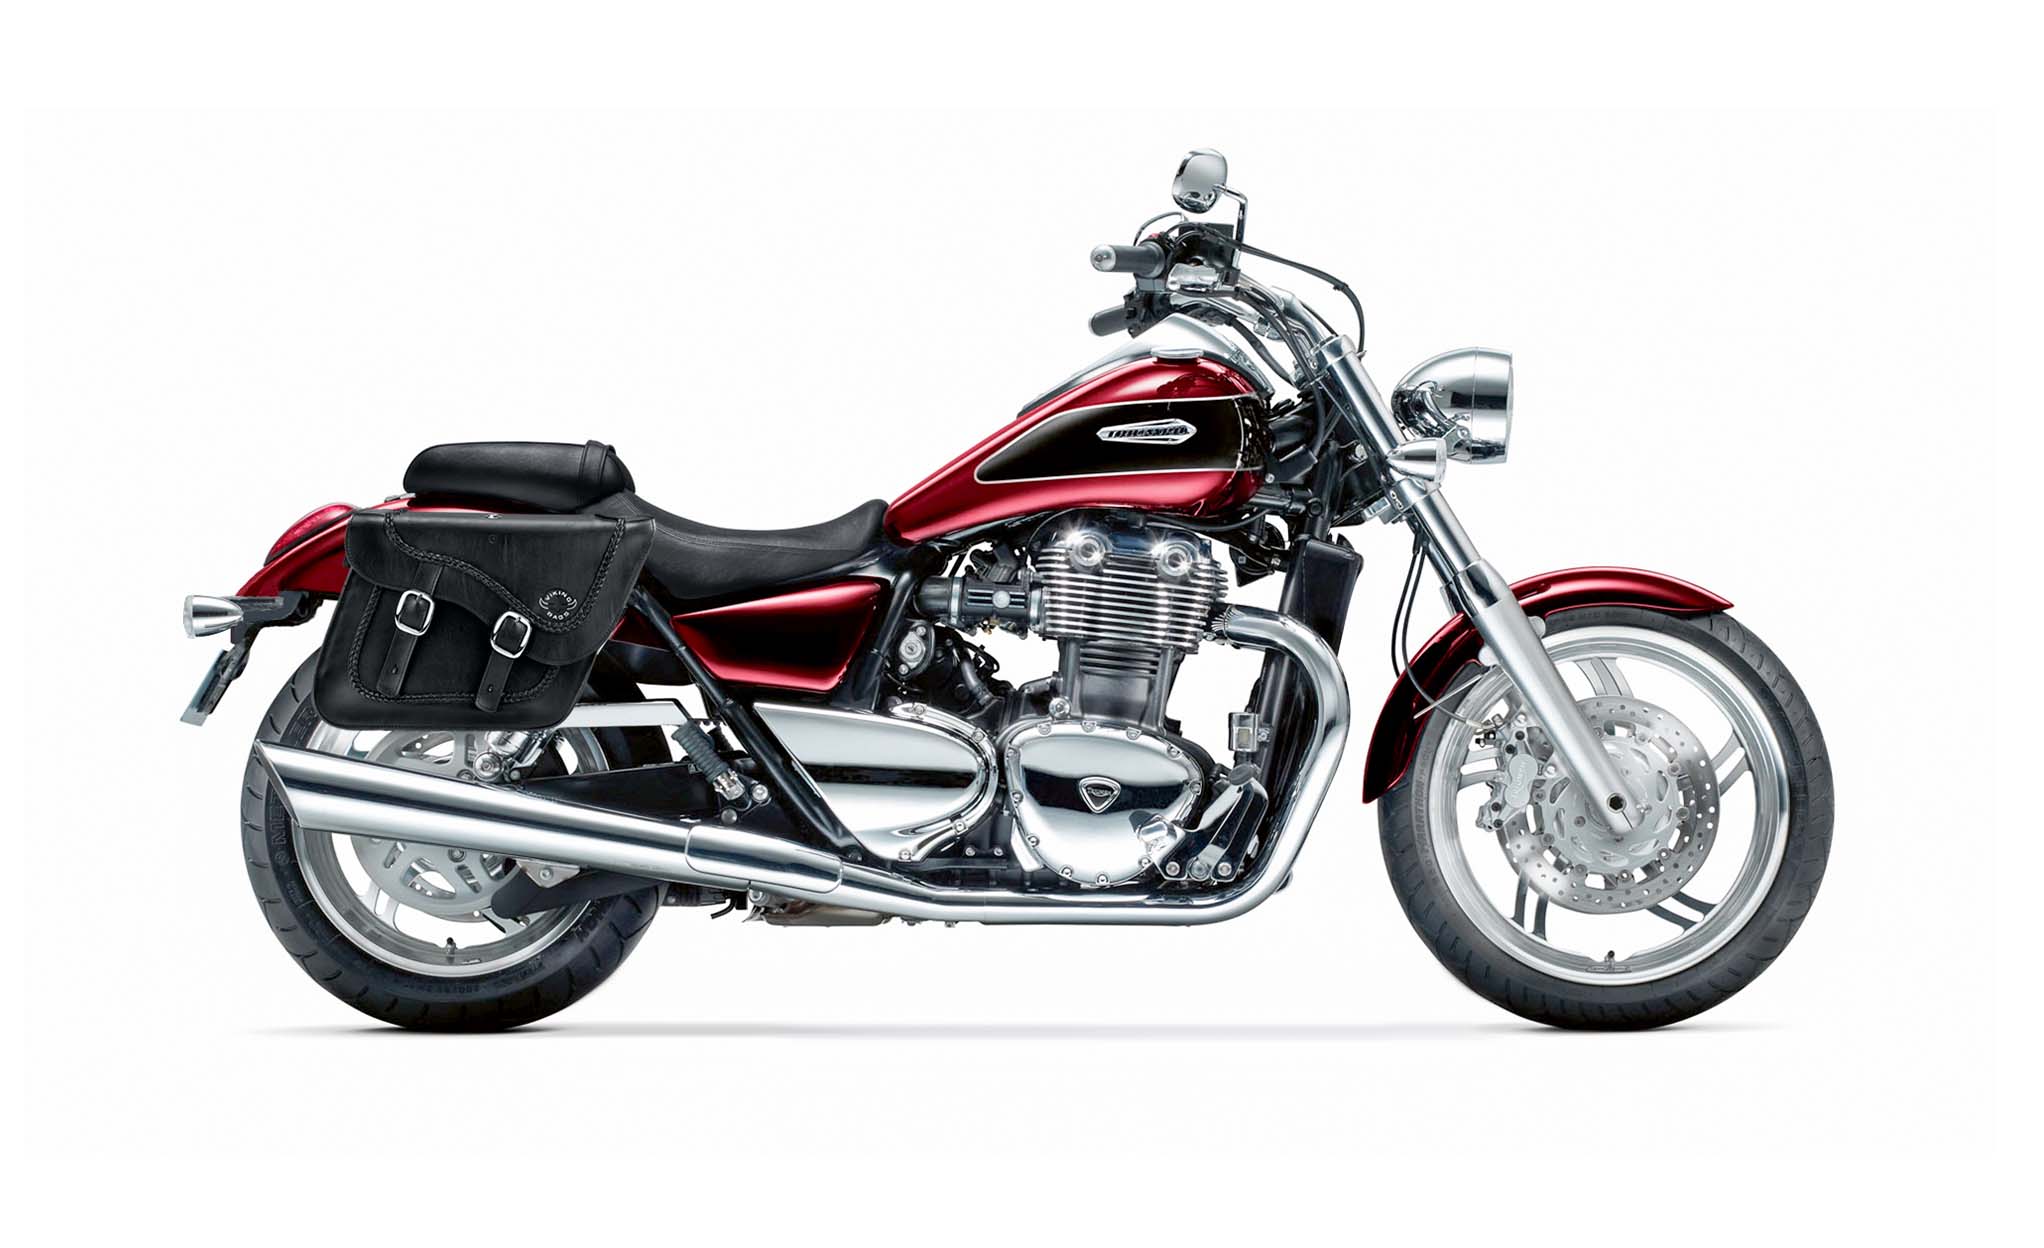 Viking Americano Triumph Thunderbird 1700 Big Bore Braided Large Leather Motorcycle Saddlebags on Bike Photo @expand